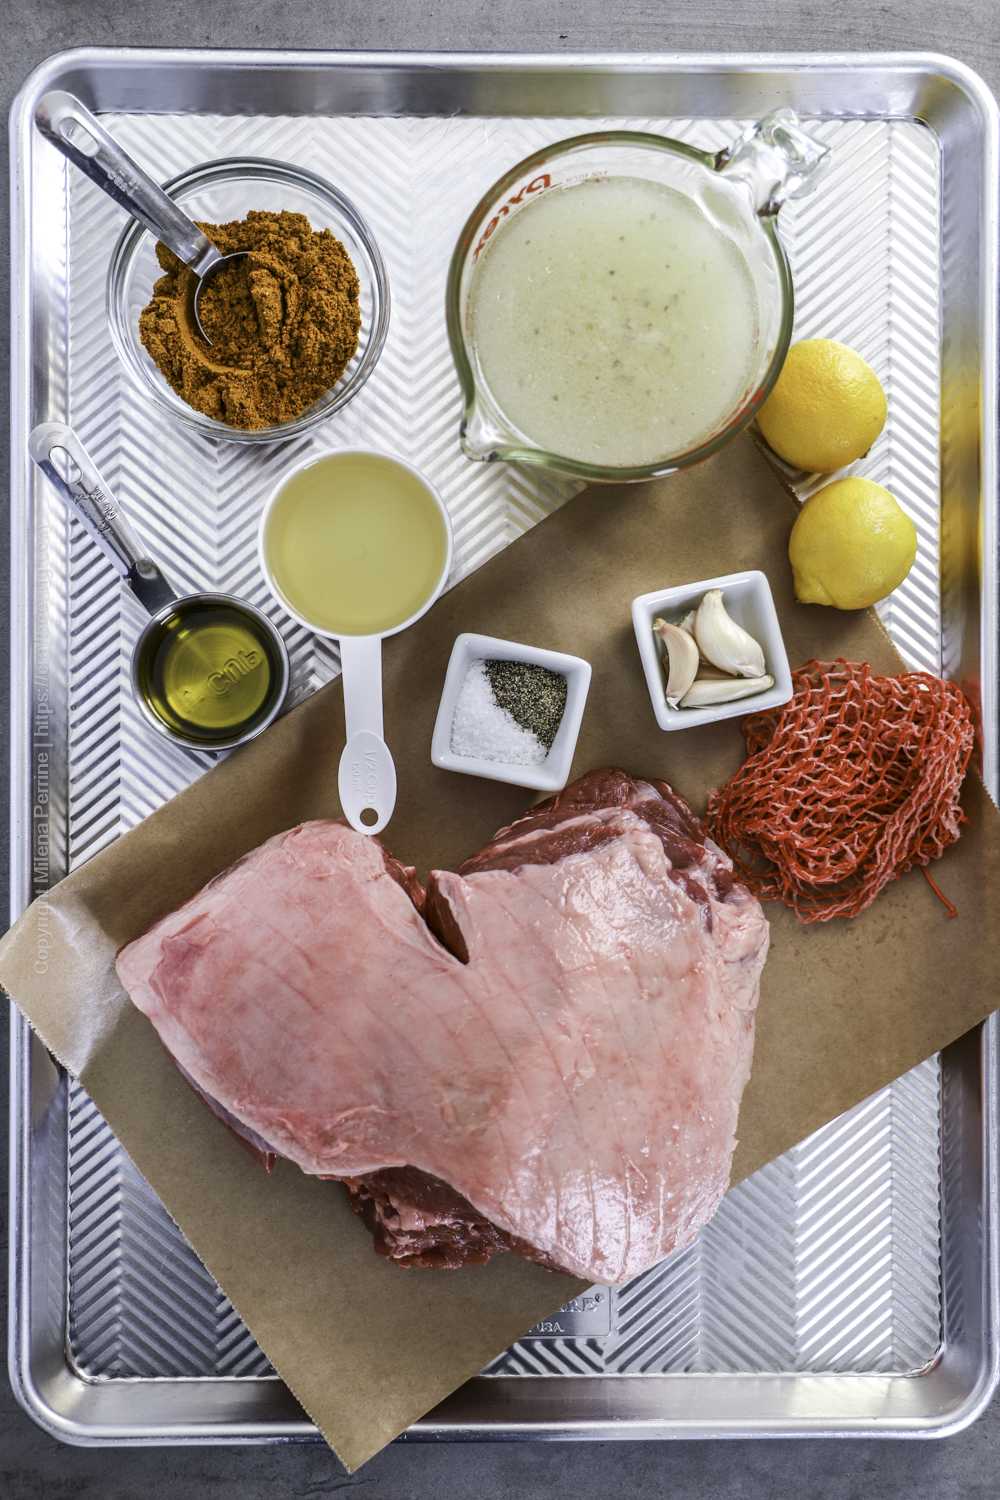 Ingredients for boneless leg of lamb slowcooker or braiser